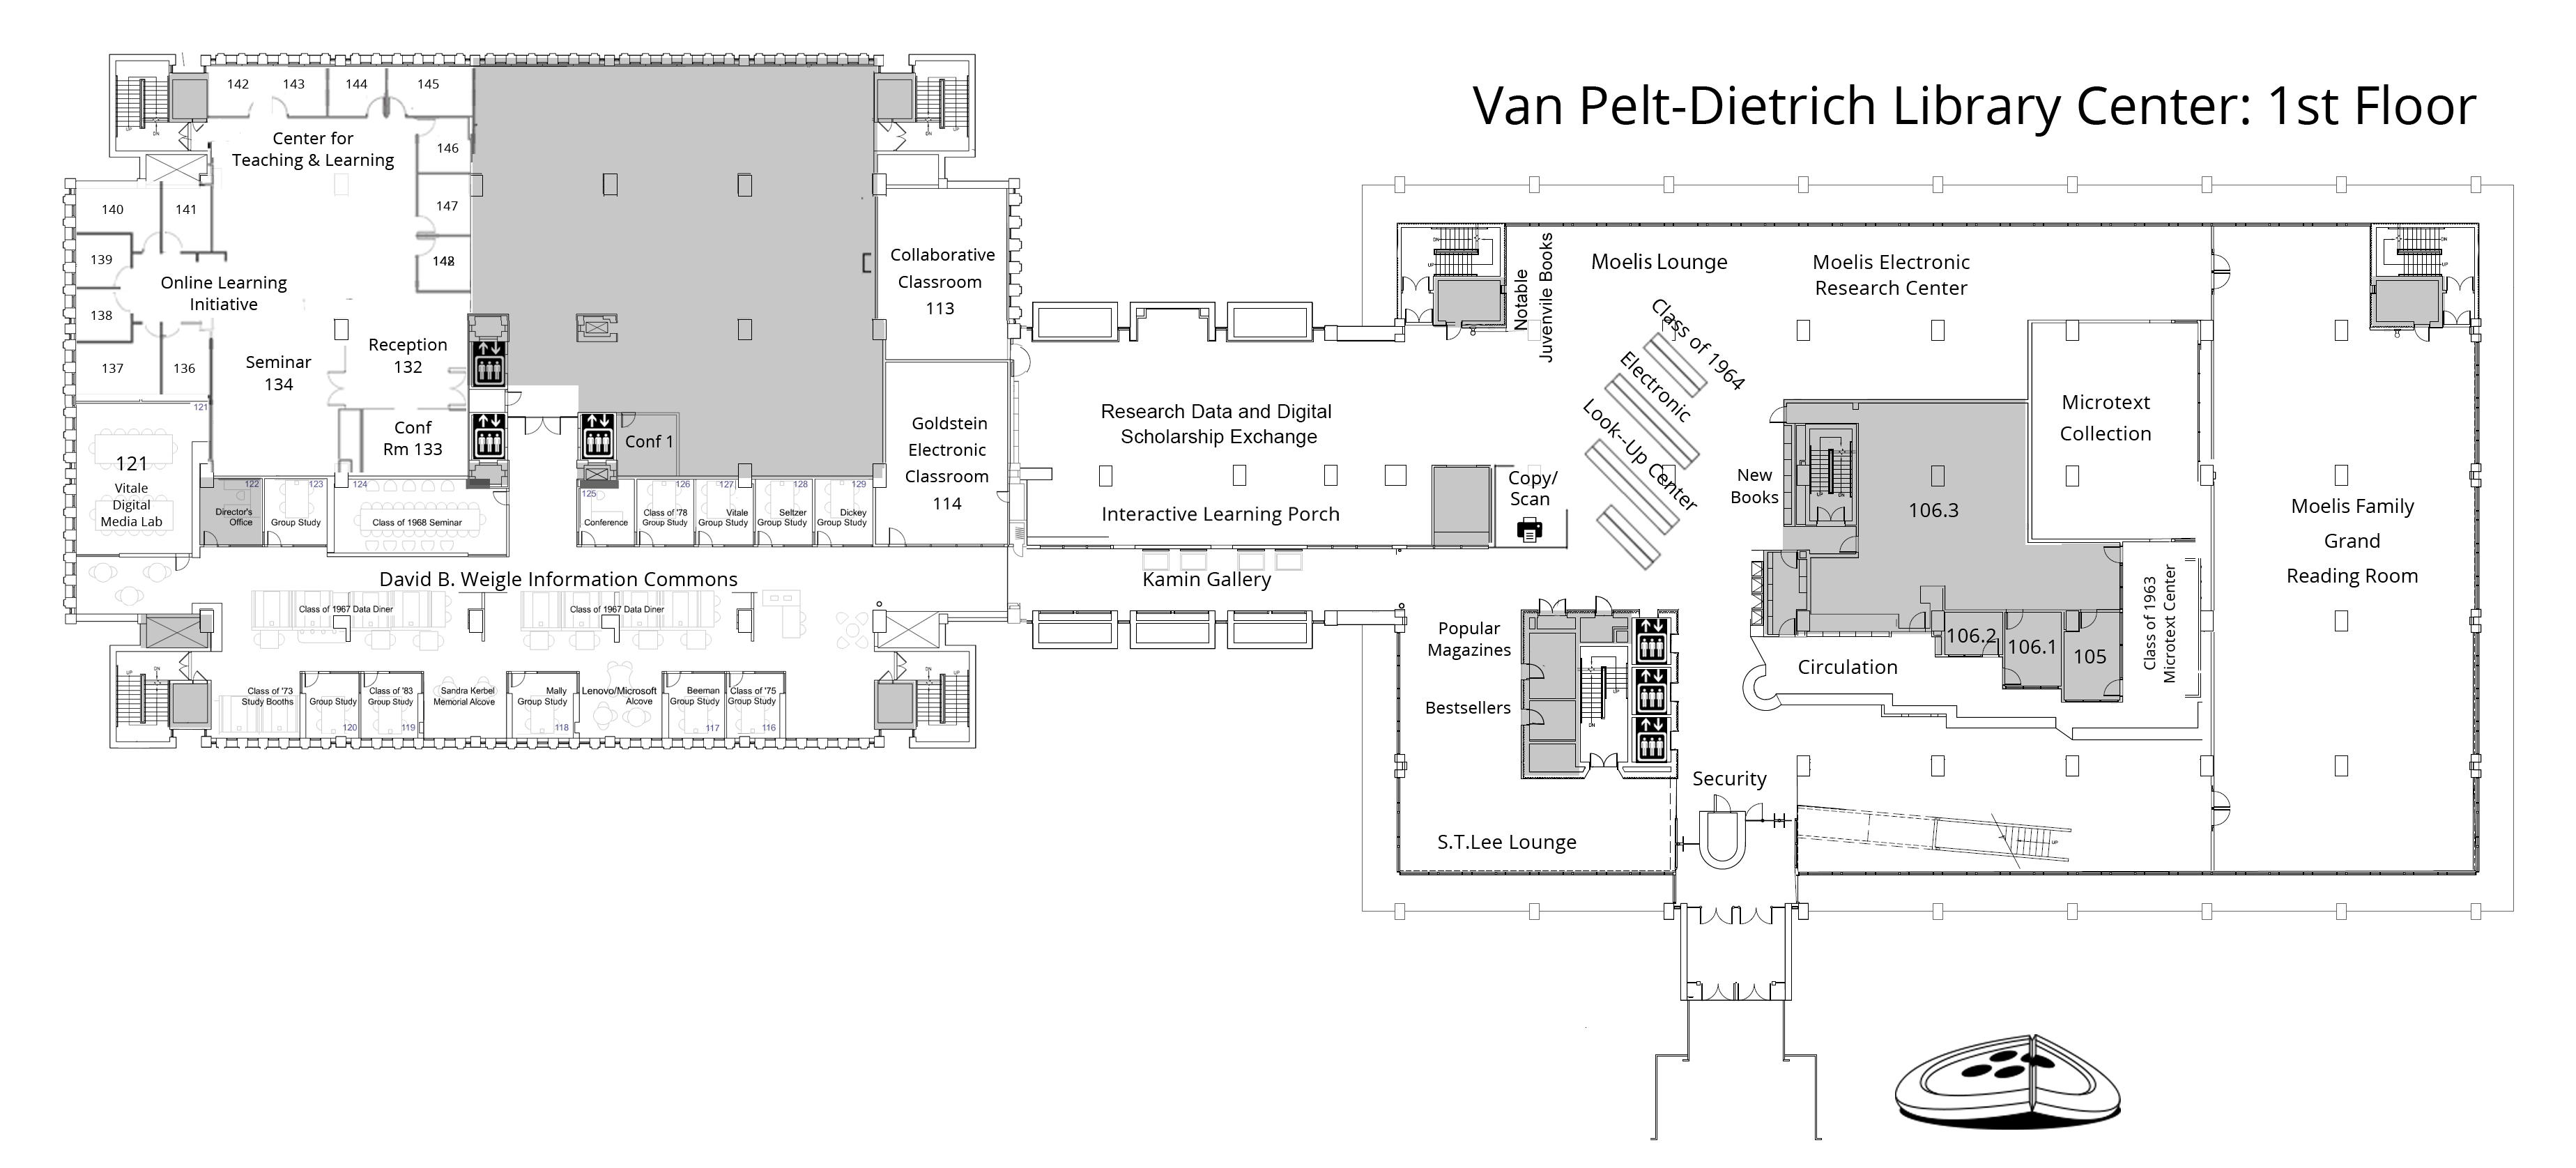 first floor plan, Van Pelt-Dietrich Library Center. Full description is below.